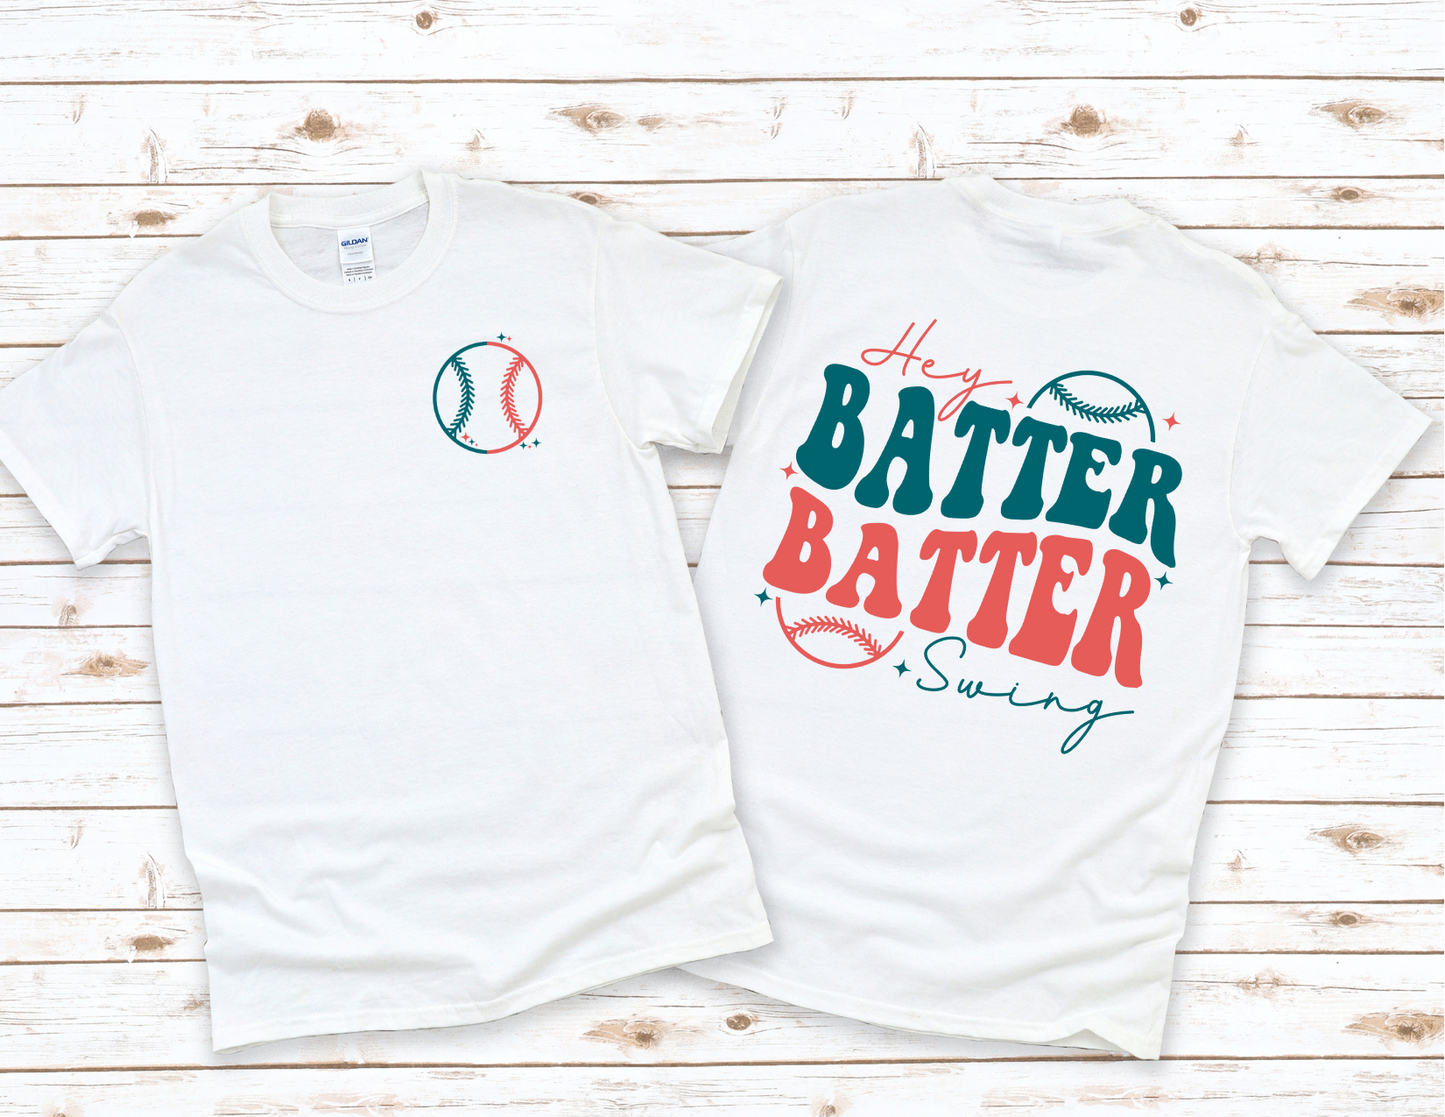 Hey Batter Batter T-Shirt